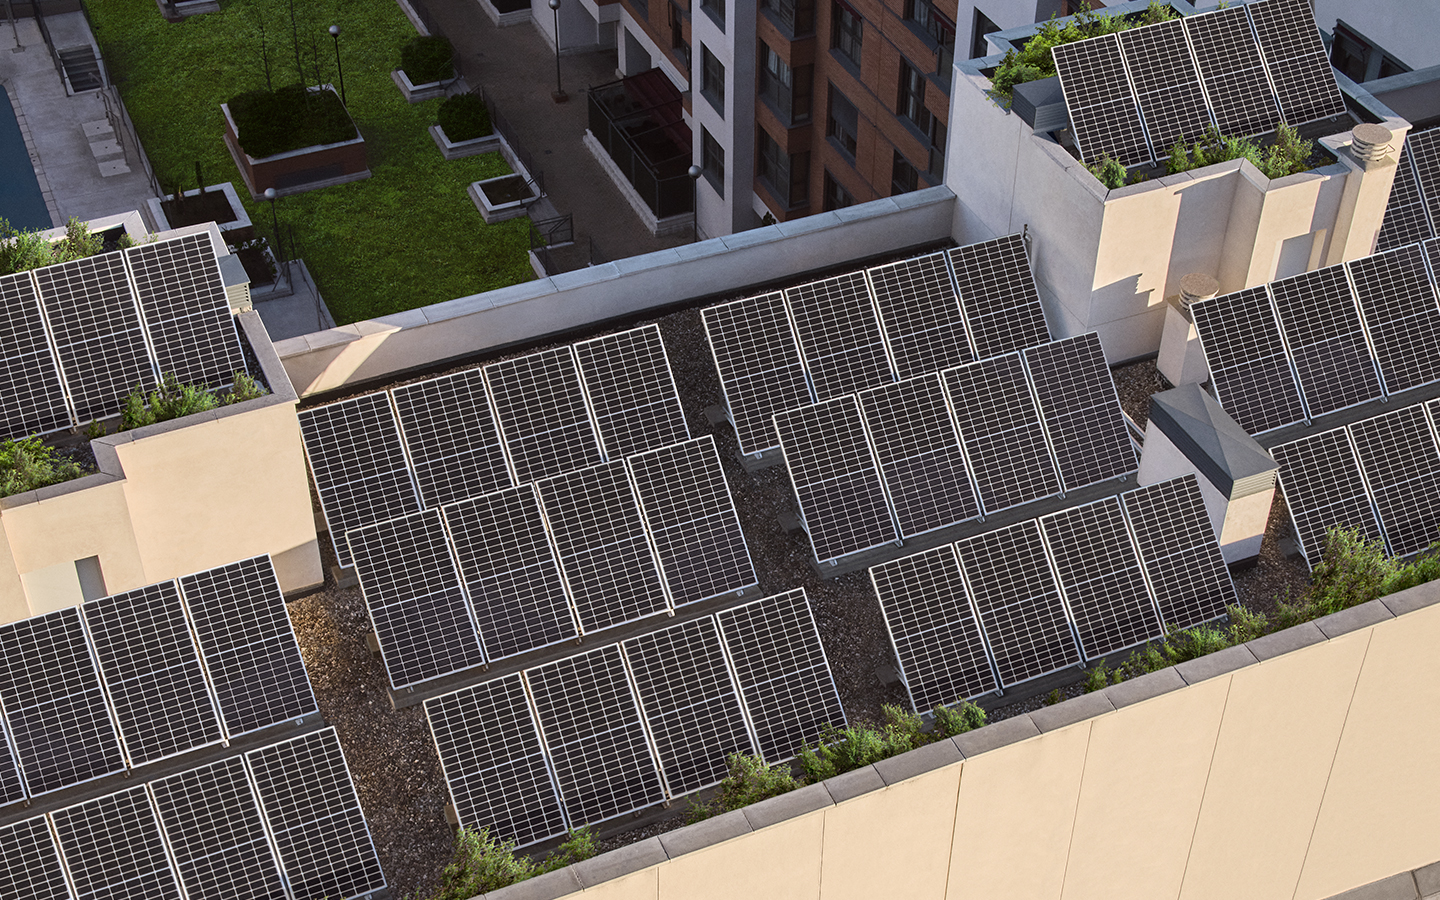 Plaques solars en comunitats de veïns: tot són avantatges.